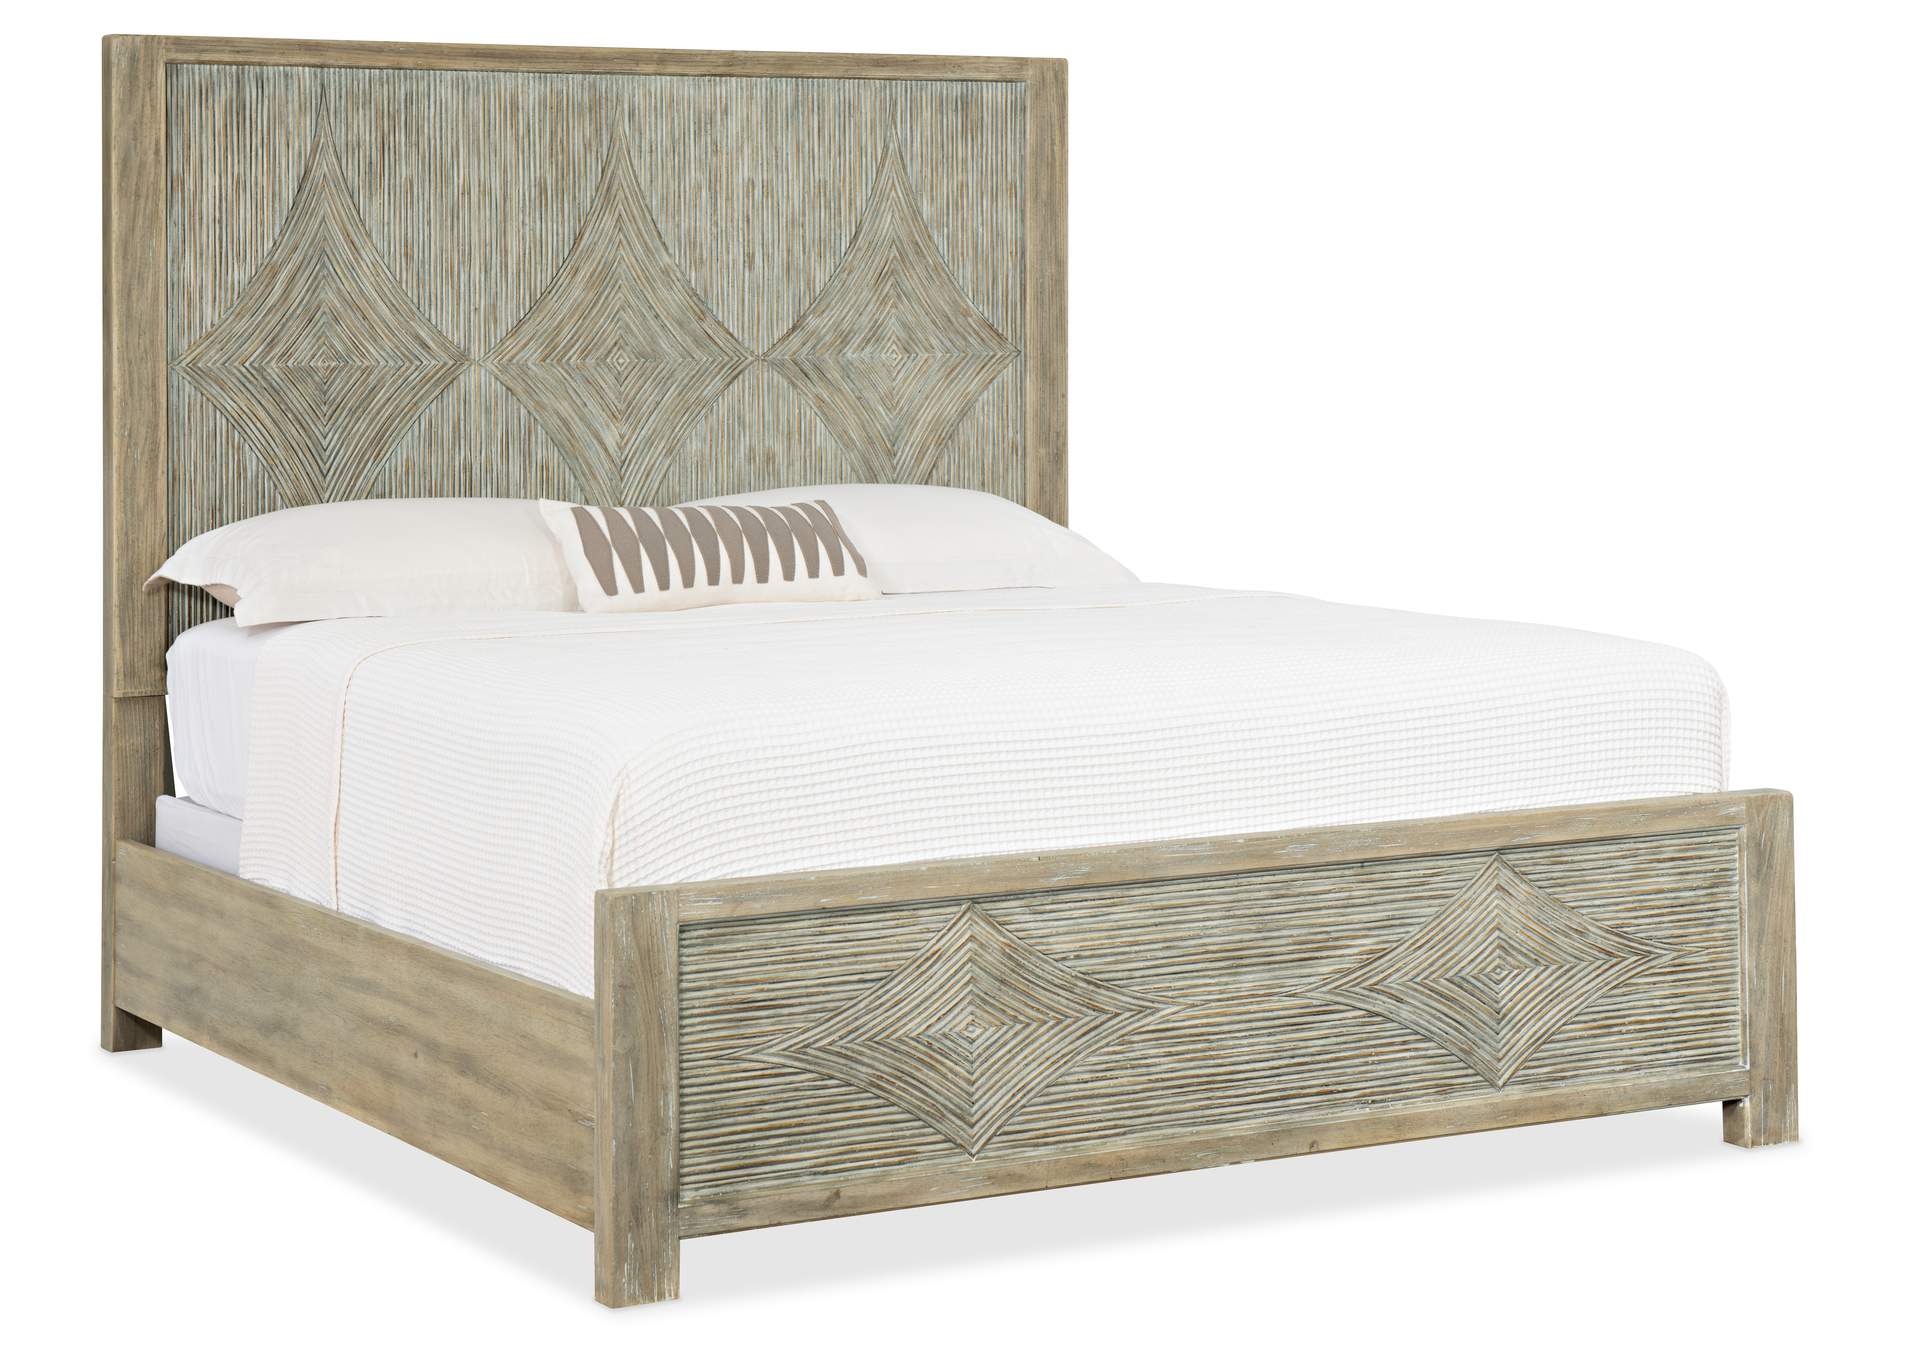 Surfrider King Panel Bed,Hooker Furniture